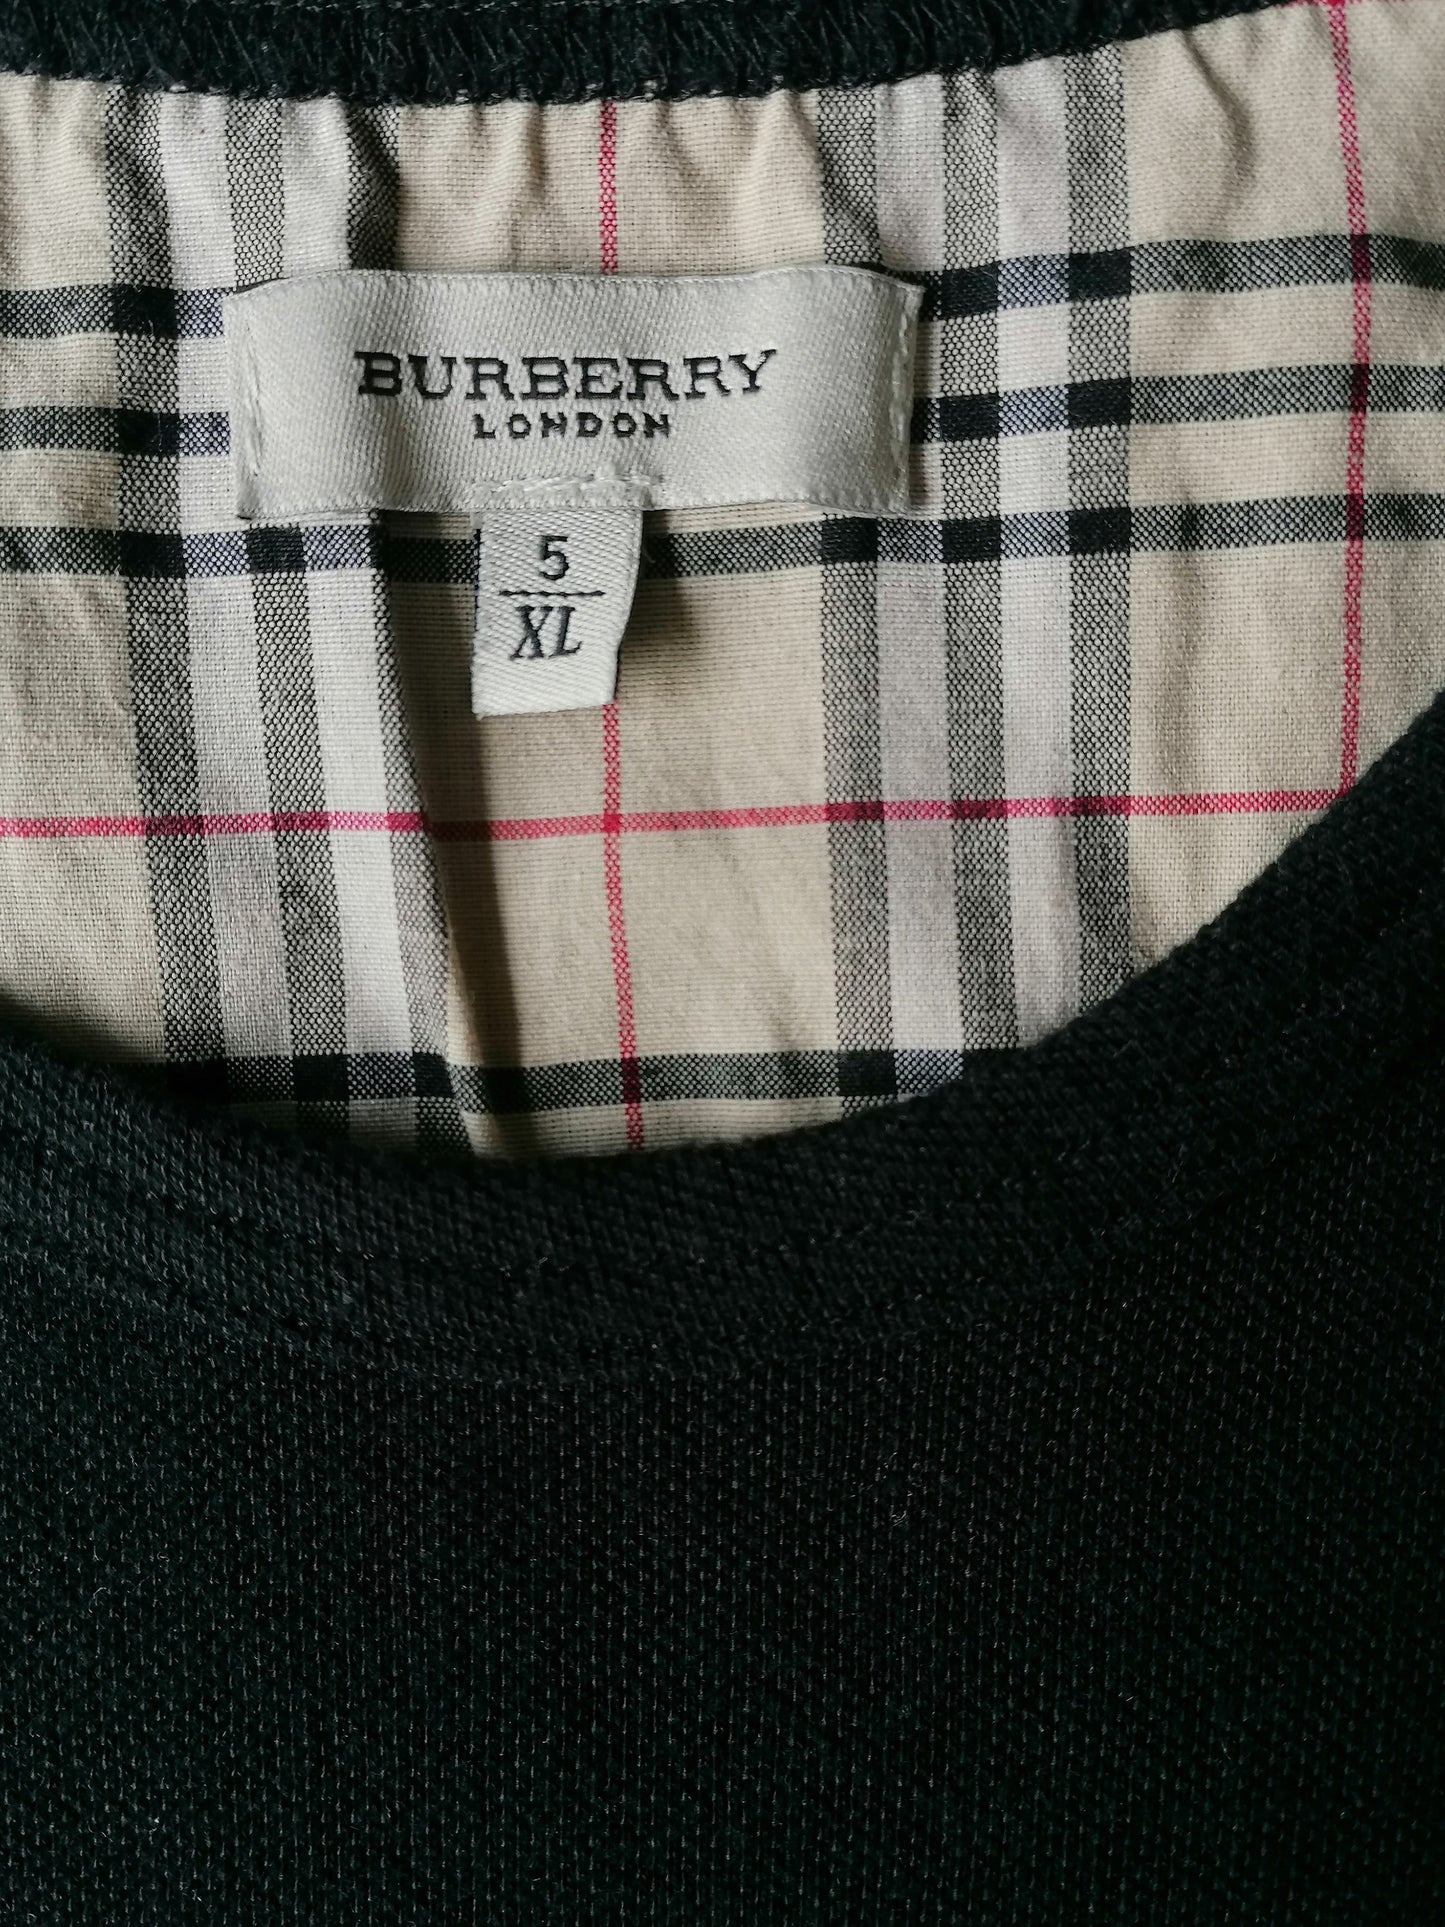 Vintage Burberry Cotton Spencer. Couleur noire. Taille xl.